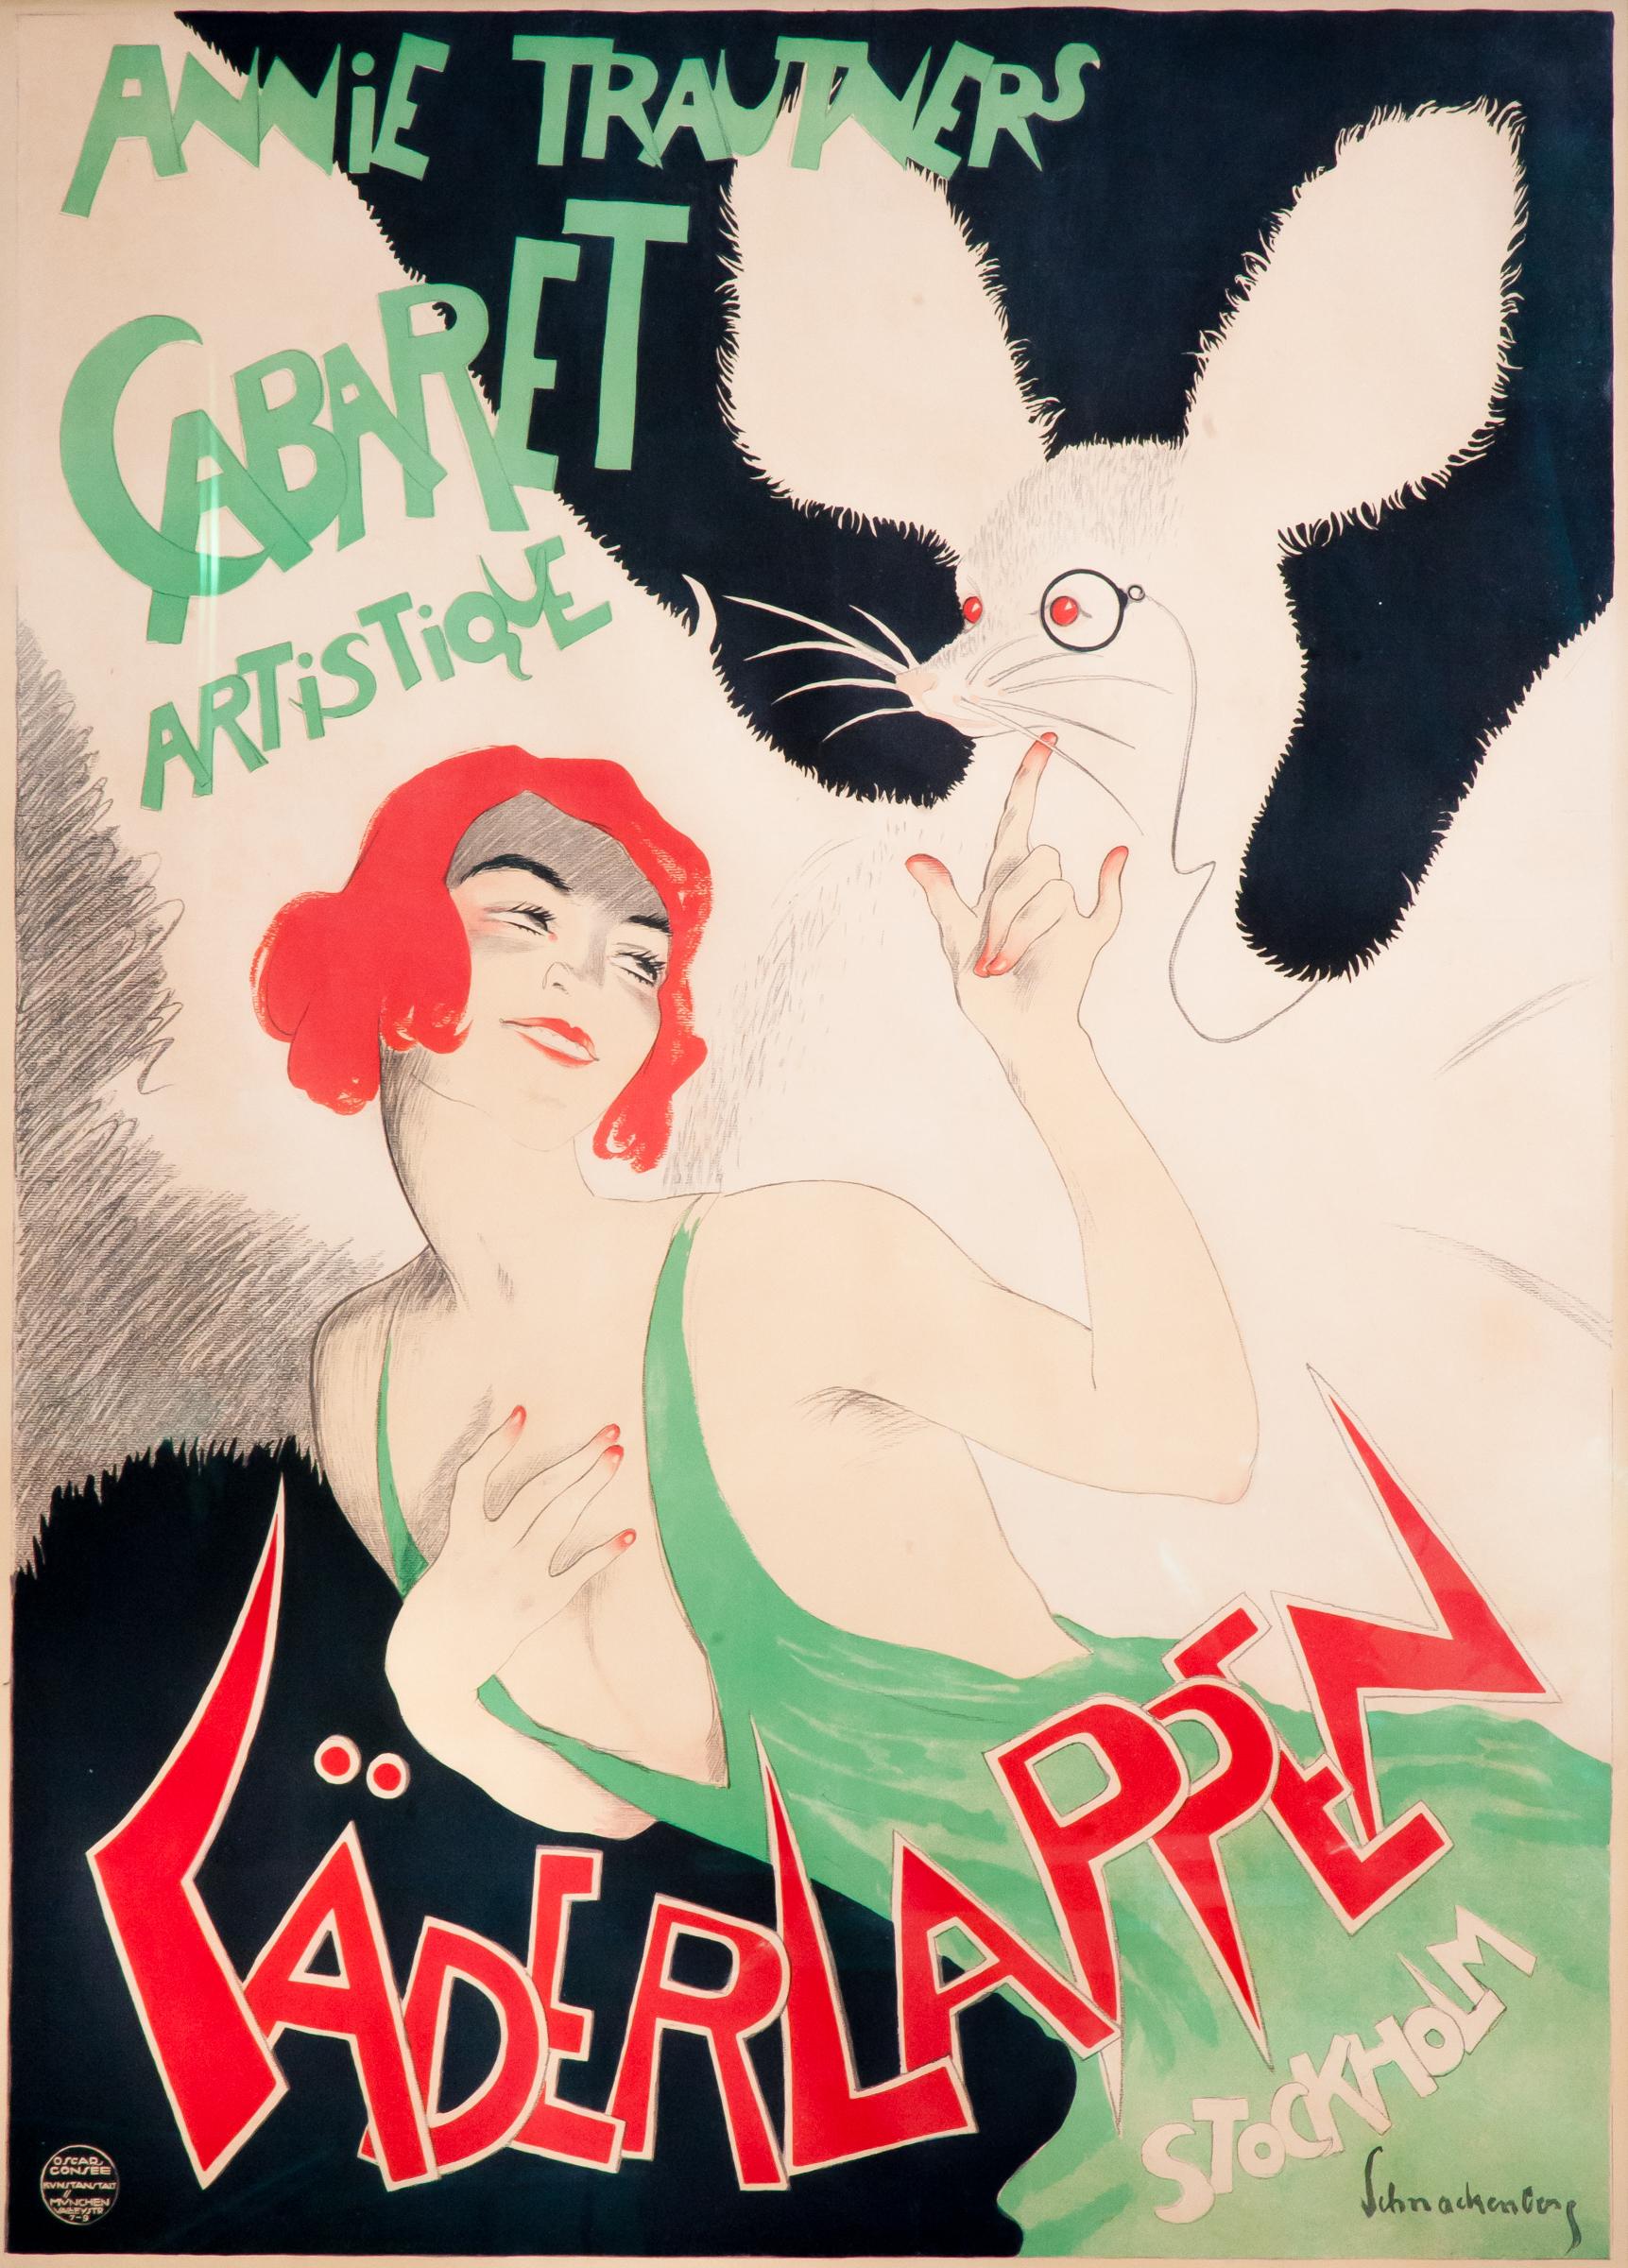 Imprimé par Oscar Consee, Munich, 1922

 On ne sait pas grand-chose de ce spectacle de cabaret basé à Stockholm. Traduit littéralement par Bat Man, on y voit un jeune danseur taquiner une chauve-souris surdimensionnée portant un monocle - un design